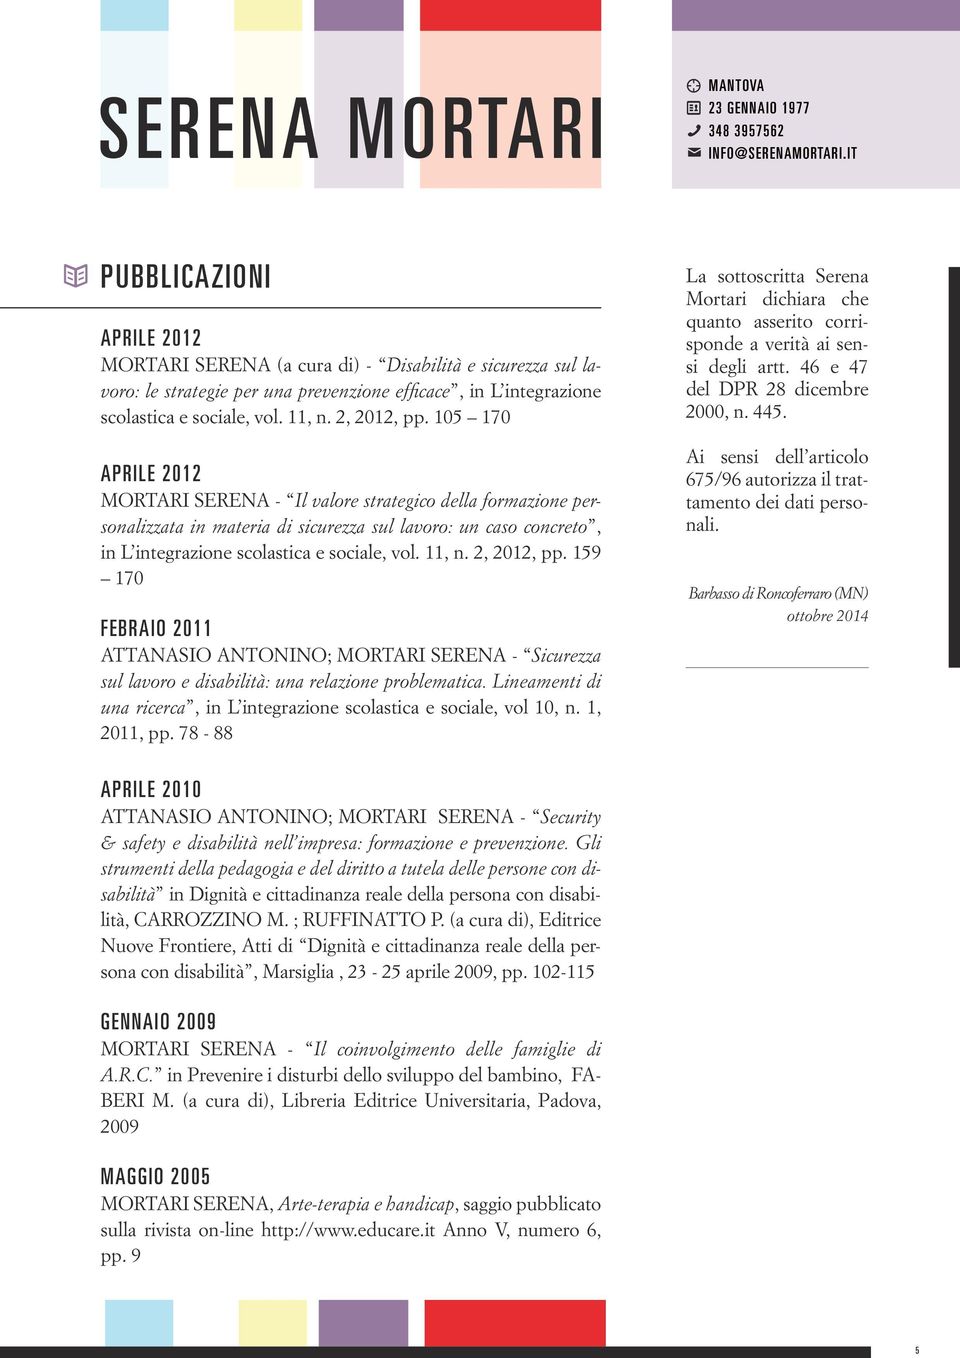 2, 2012, pp. 159 170 febraio 2011 ATTANASIO ANTONINO; MORTARI SERENA - Sicurezza sul lavoro e disabilità: una relazione problematica.